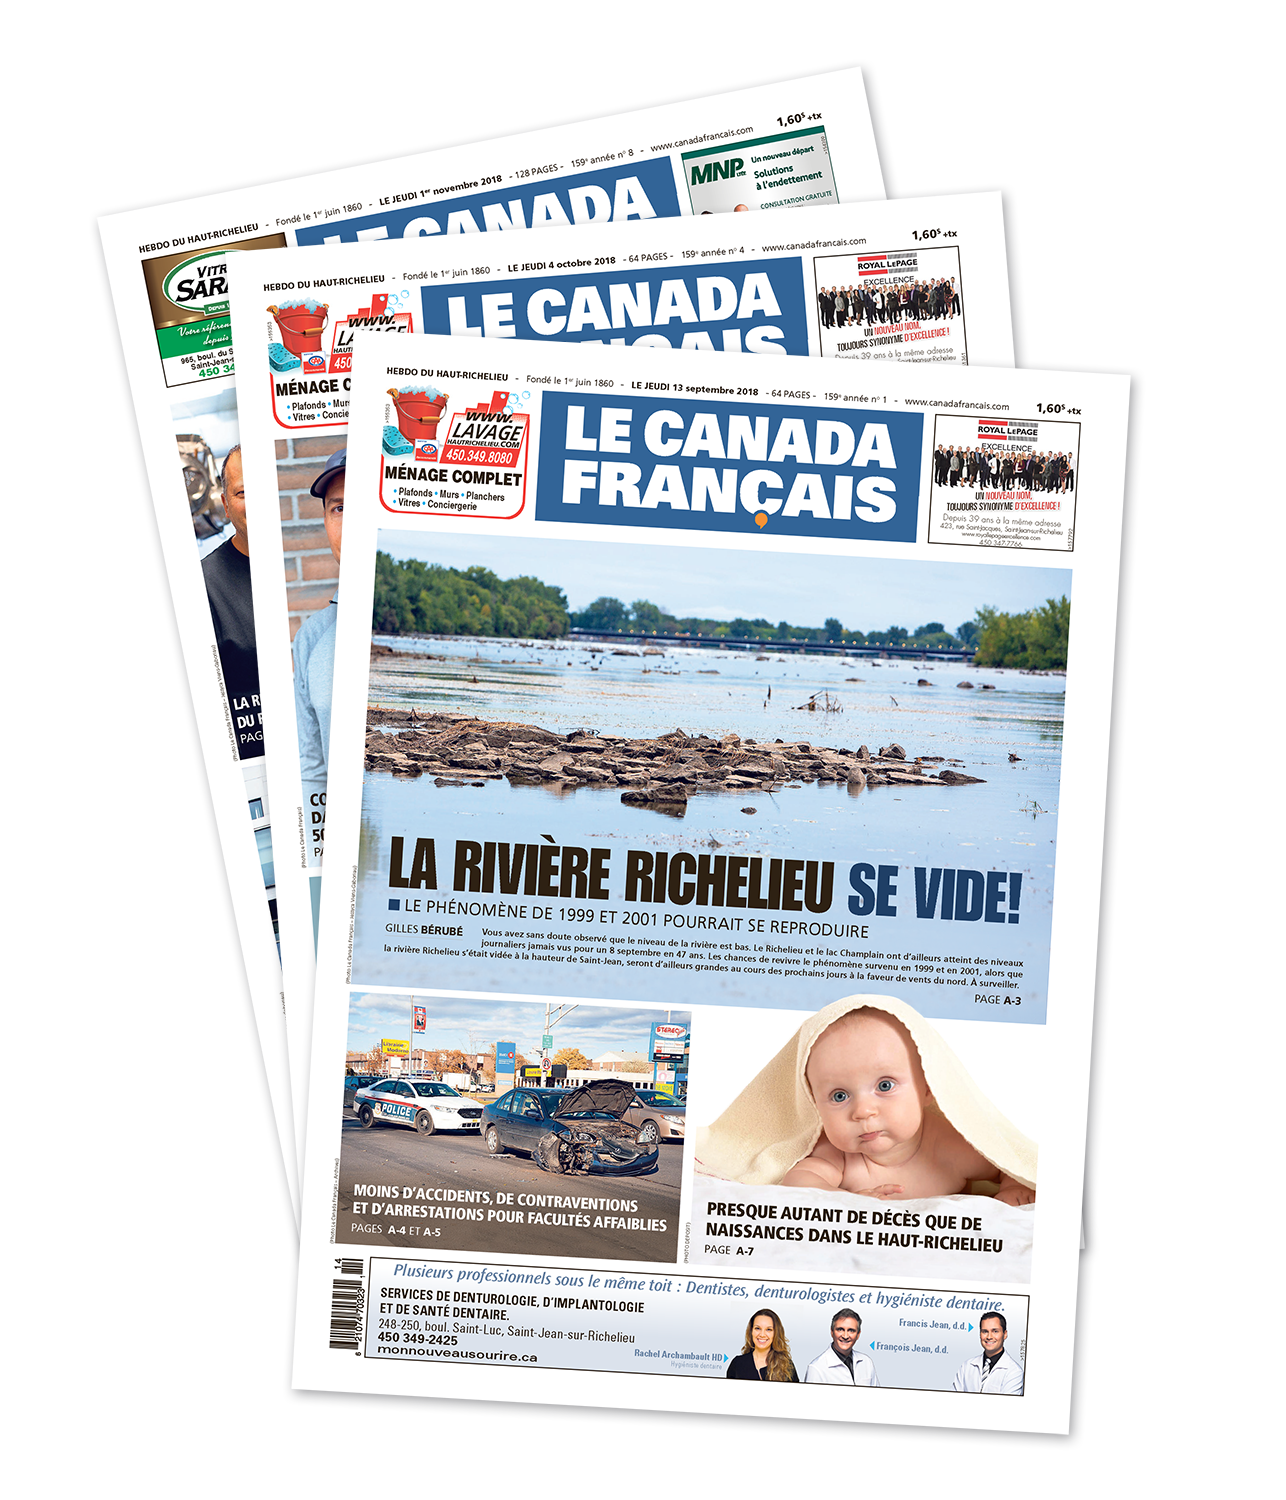 Abonnez-vous au journal Le Canada Français et accédez à tout le contenu réservé sur le site Web lecanadafrancaiskiosk.milibris.com